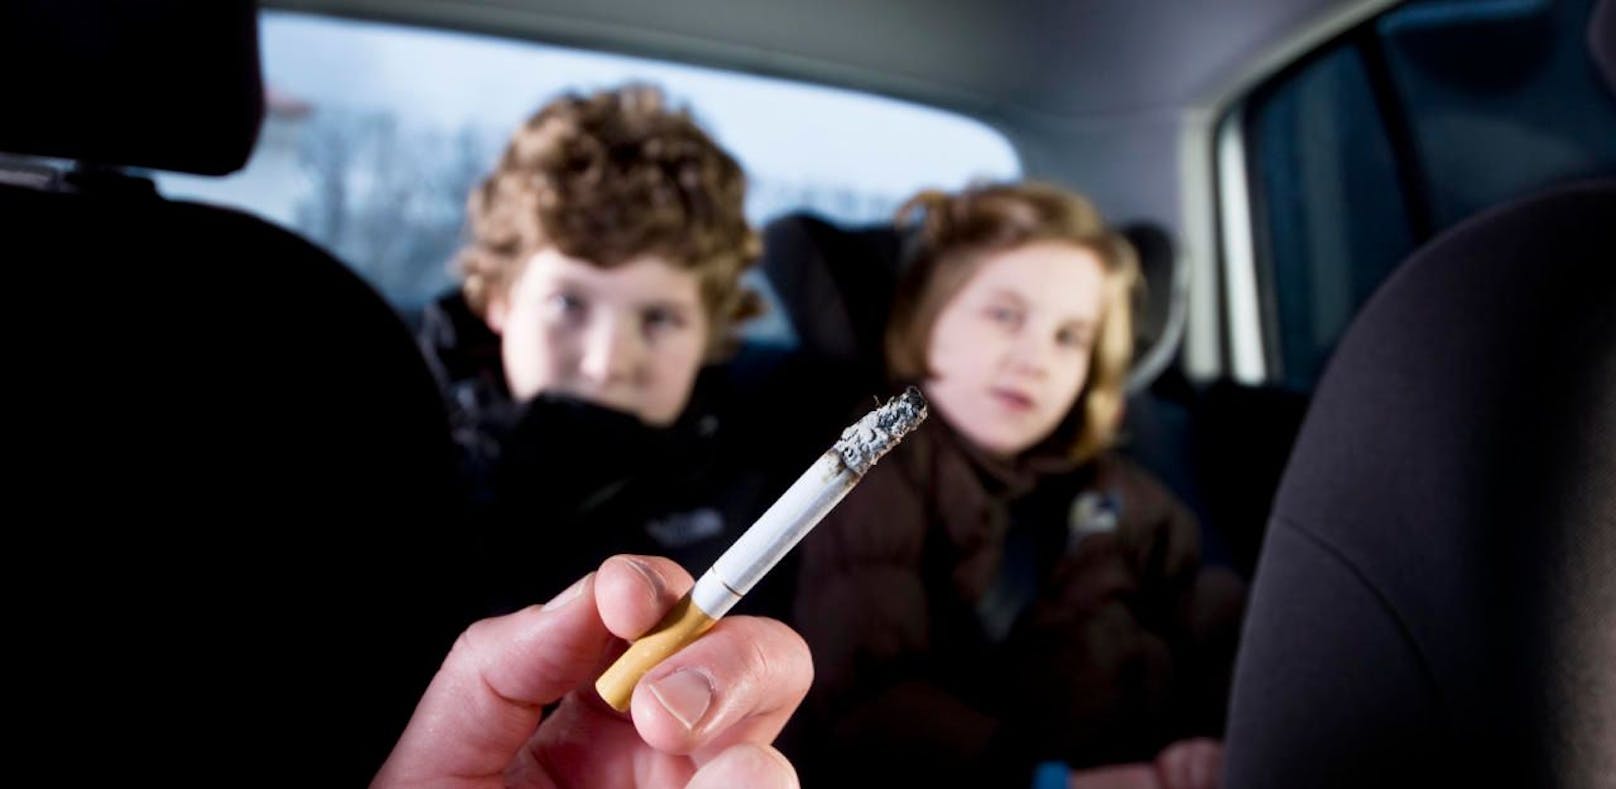 Sind Kinder im Auto, ist das Rauchen künftig verboten.